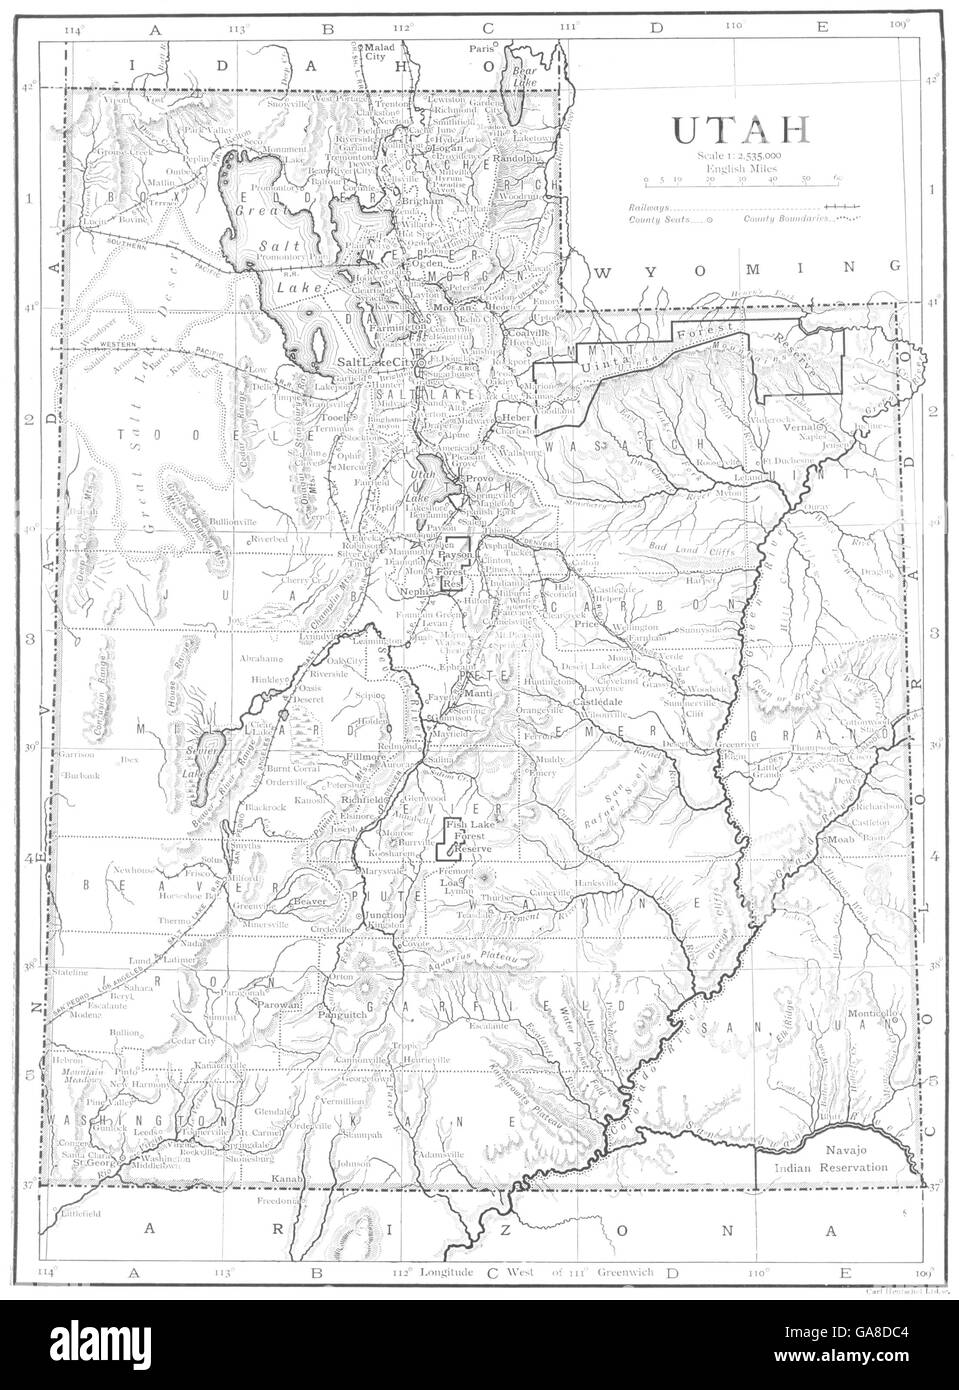 UTAH: Utah, 1910 antique map Stock Photo